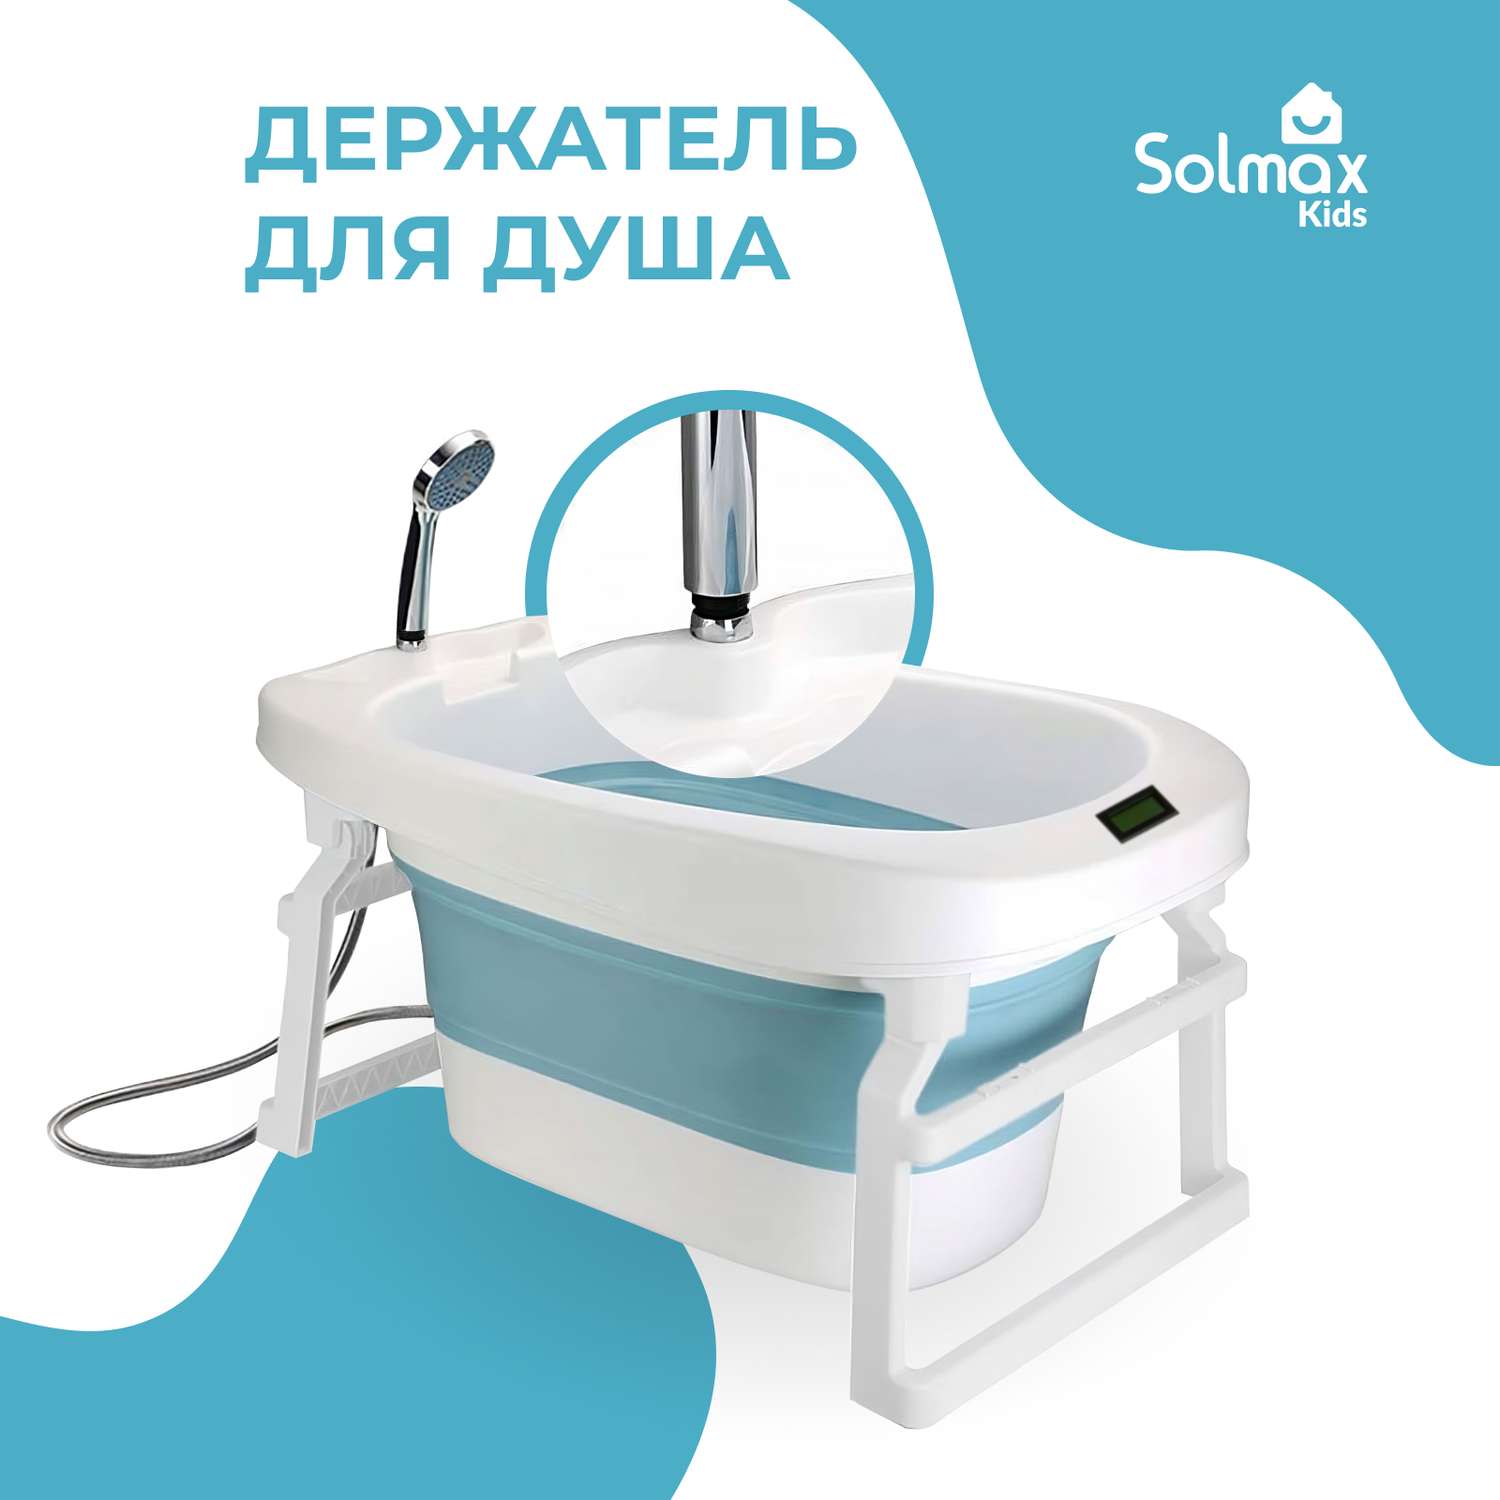 Детская складная ванночка Solmax с термометром для купания новорожденных синяя - фото 2